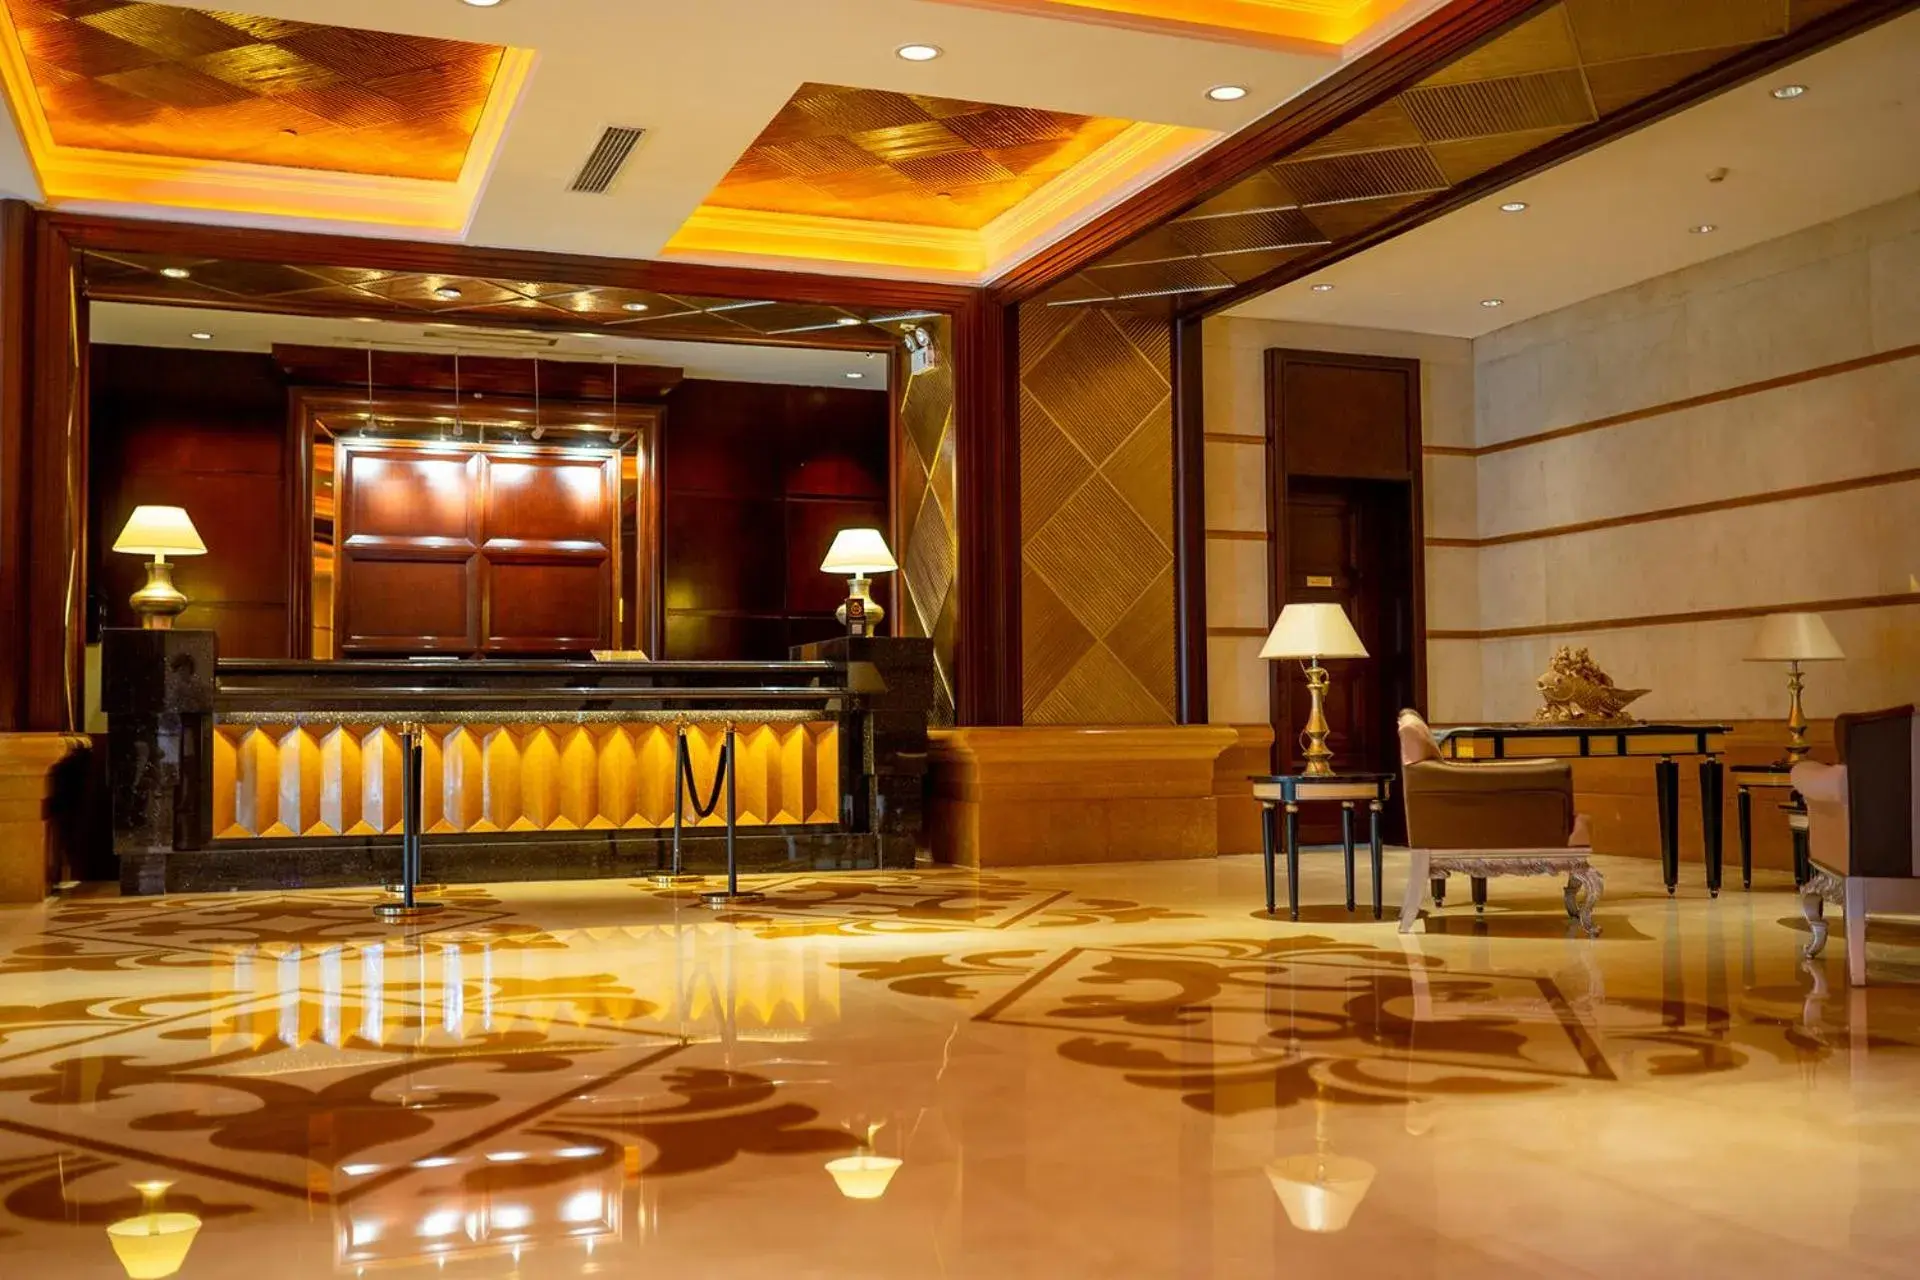 Lobby or reception, Lobby/Reception in Grand International Hotel